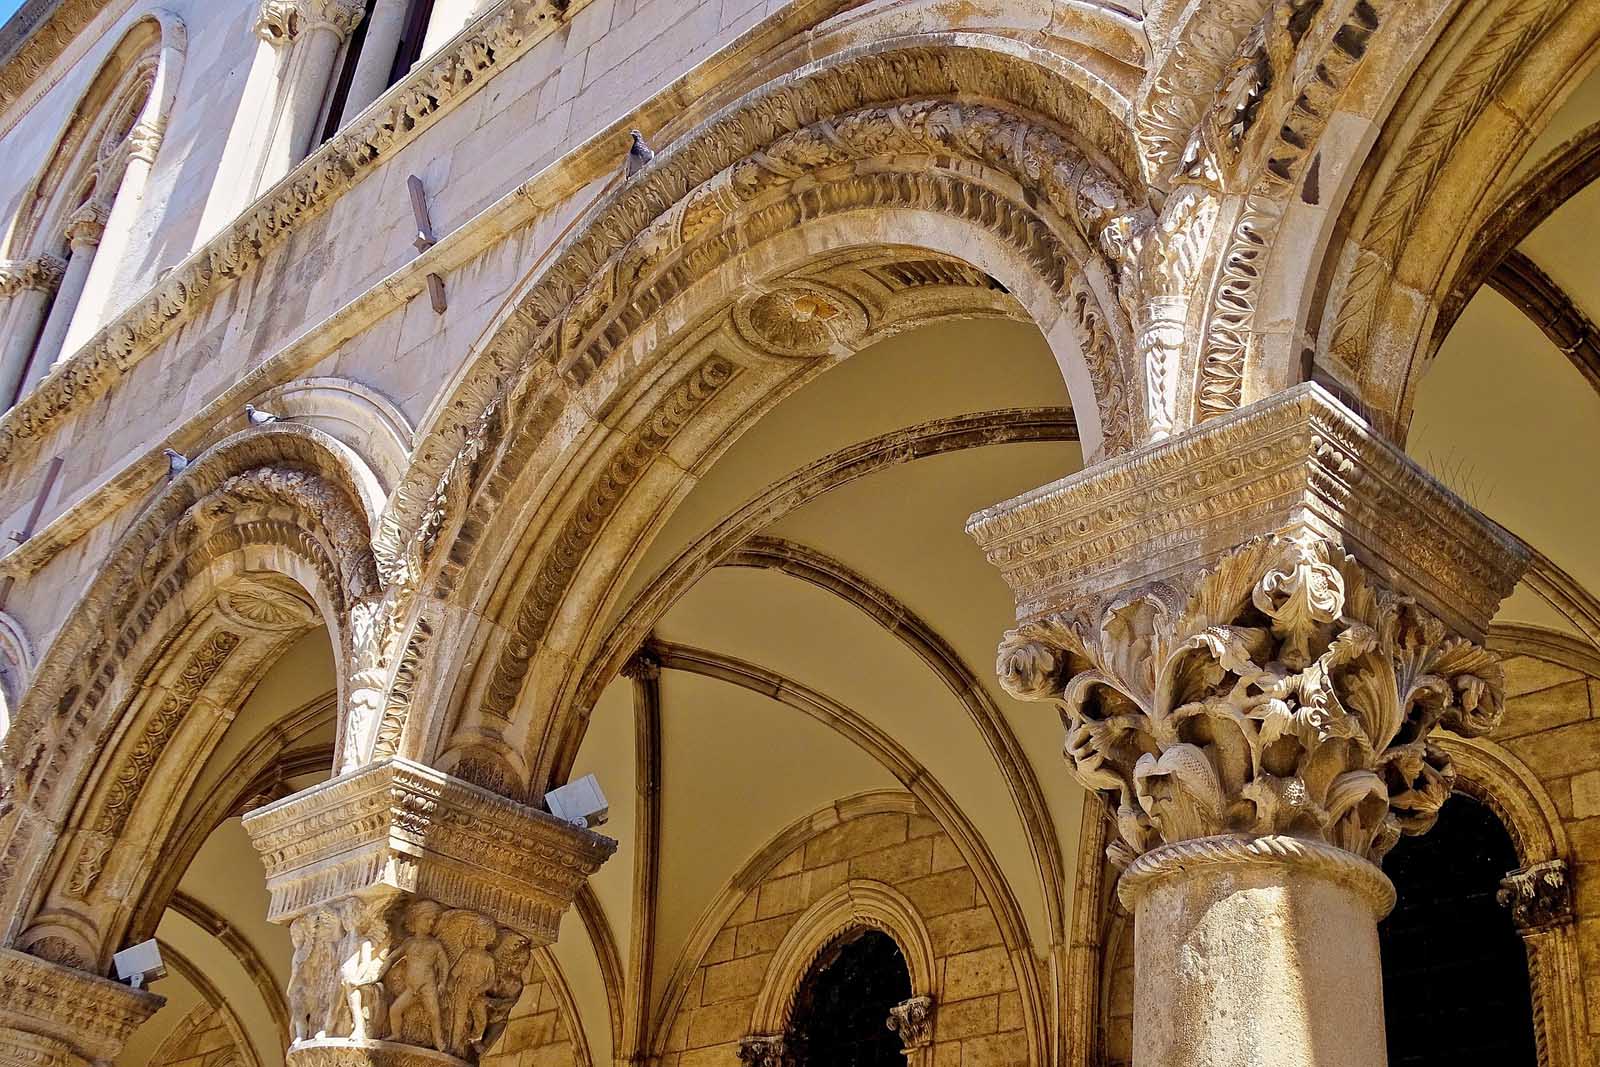 Visit Rectors Palace in Dubrovnik Croatia